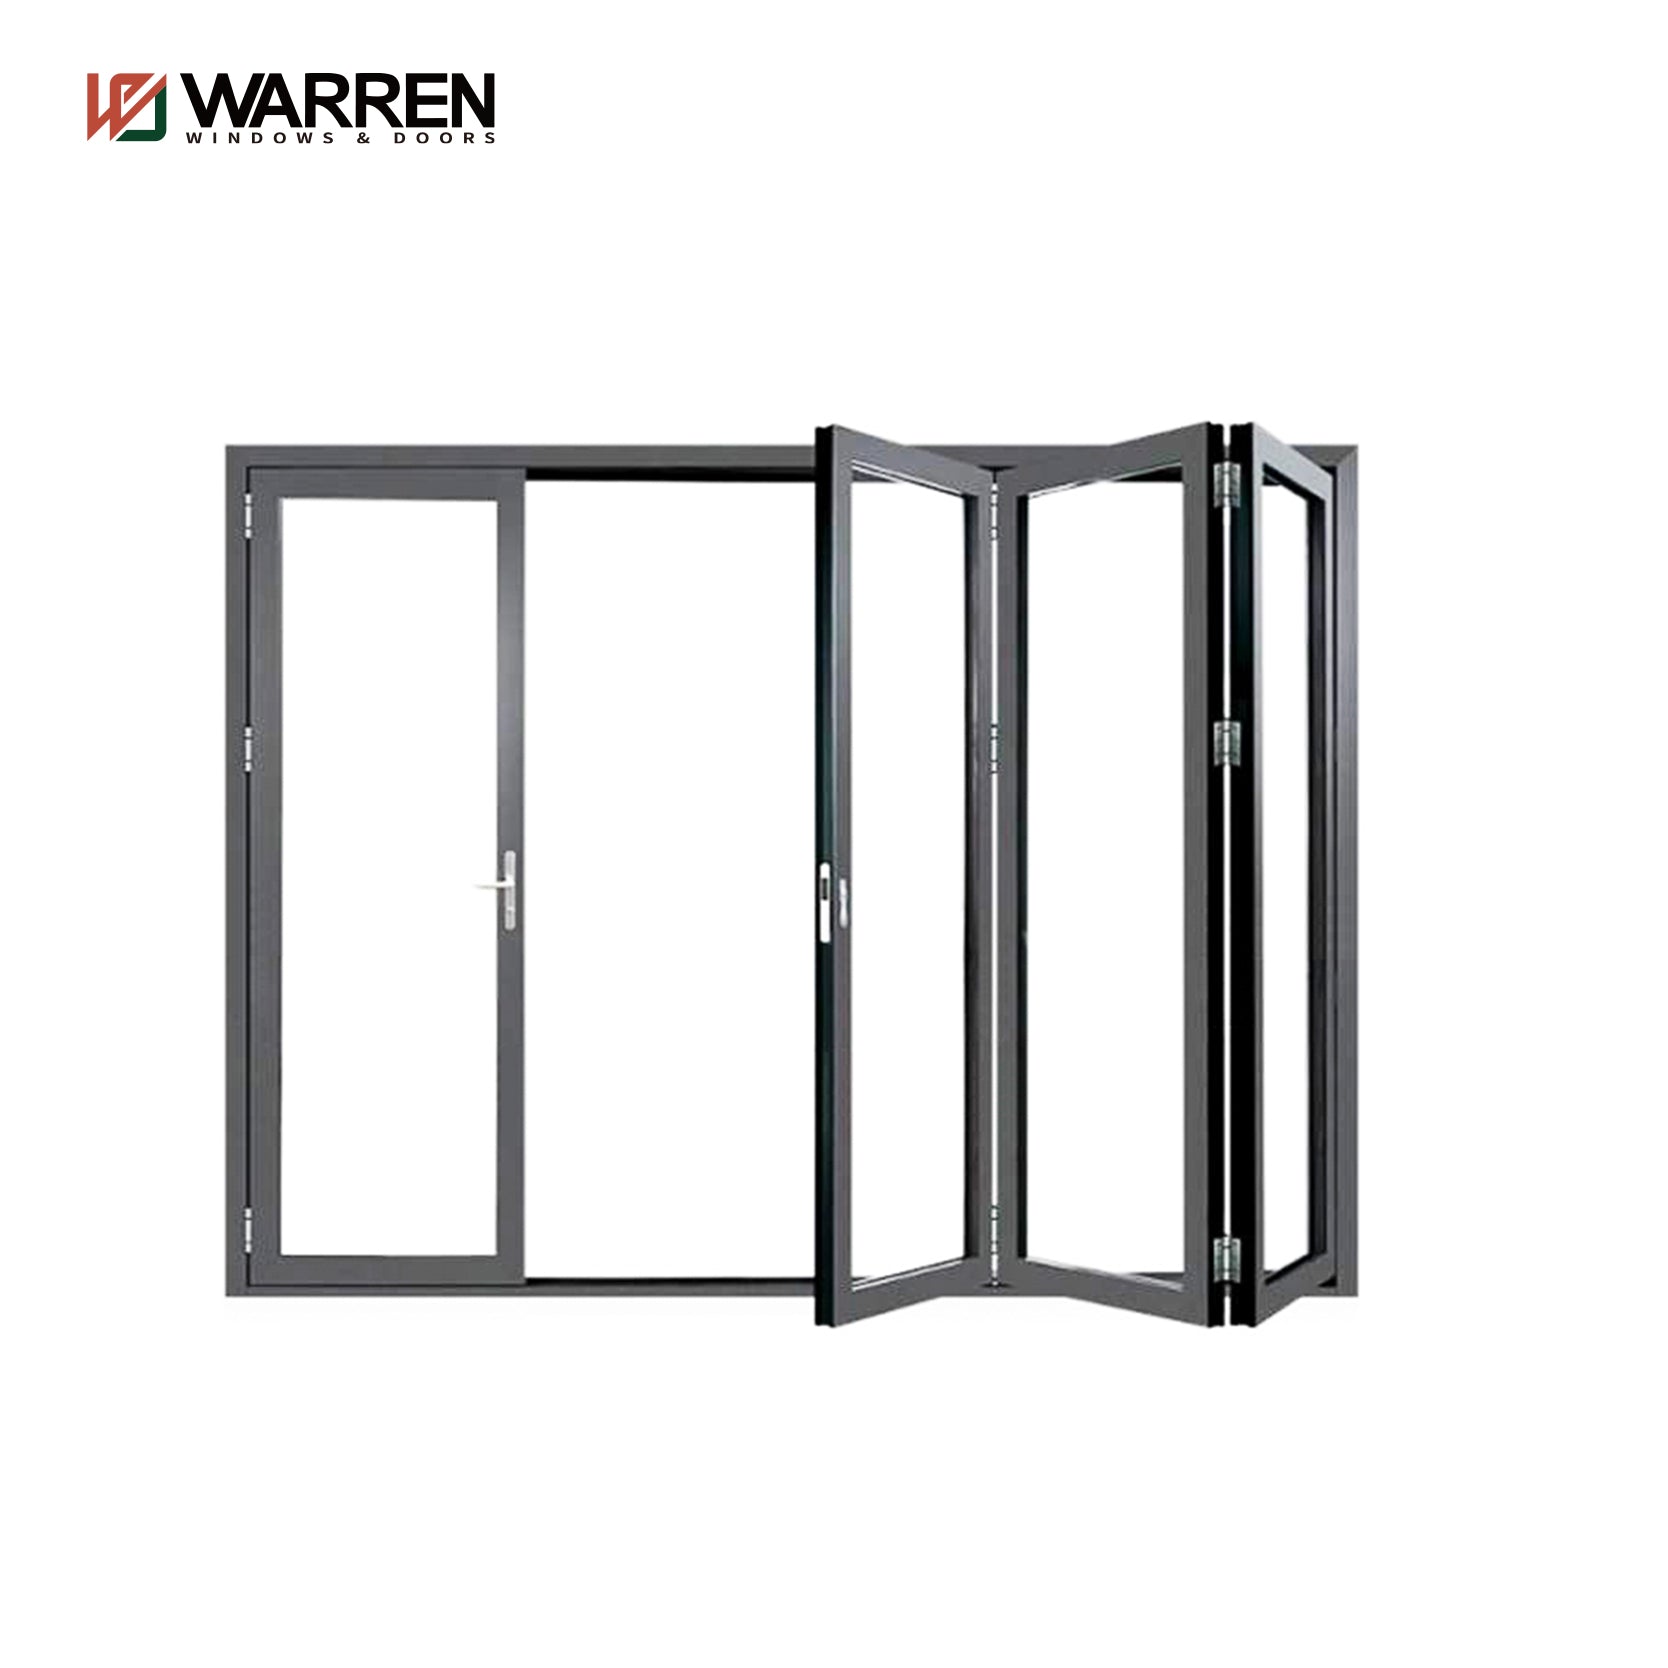 Warren Factory Hot Sales Modern Design Soundproof Bi-Fold Door Glass Aluminum Doors